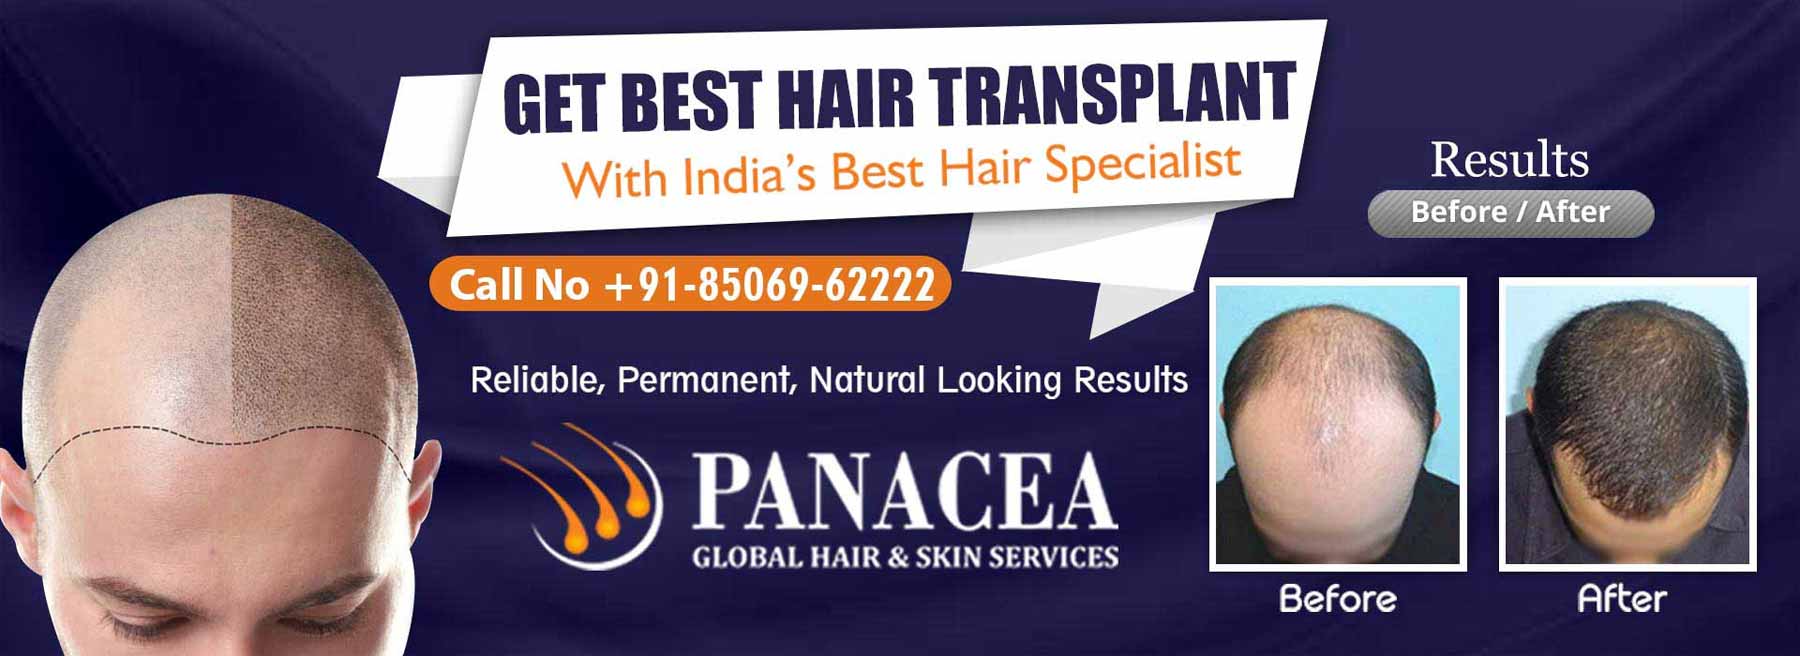 Get Best Hair Transplant - Panacea Global in Meerut